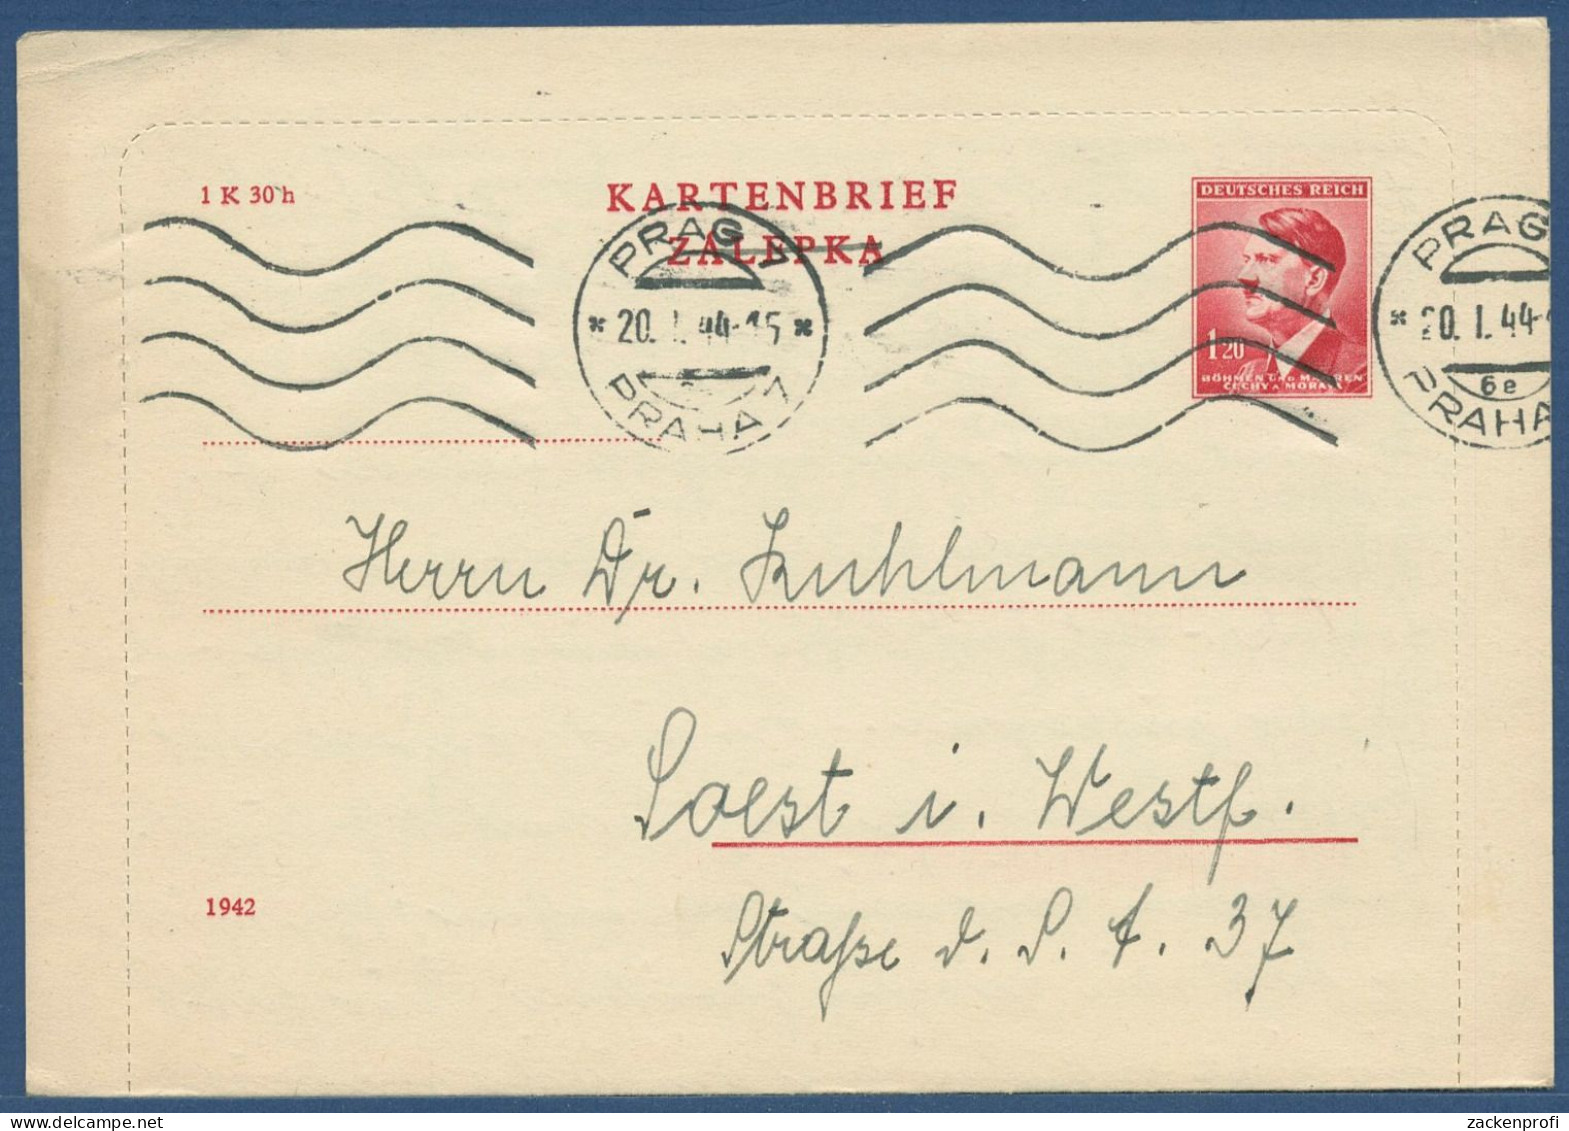 Böhmen Und Mähren 1942 Kartenbrief K 4 II A Gebraucht Mit Rand (X40611) - Briefe U. Dokumente